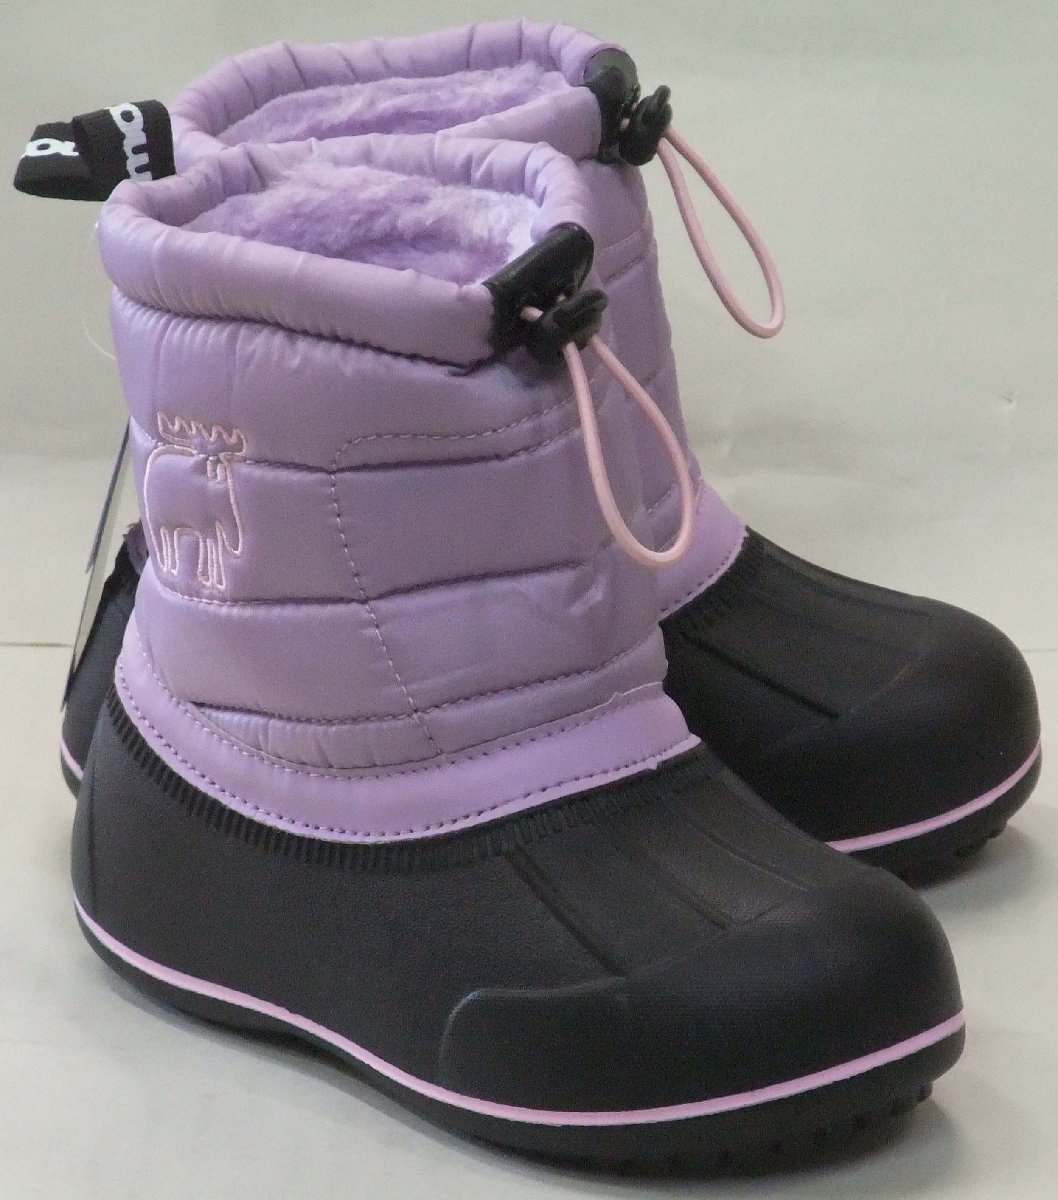 Бесплатная доставка Moz Moz Mz-8209 Водонепроницаемые зимние ботинки Lavender 19 см. Детские легкие снежные сапоги Boa Mokomoko теплые спецификации страны снега